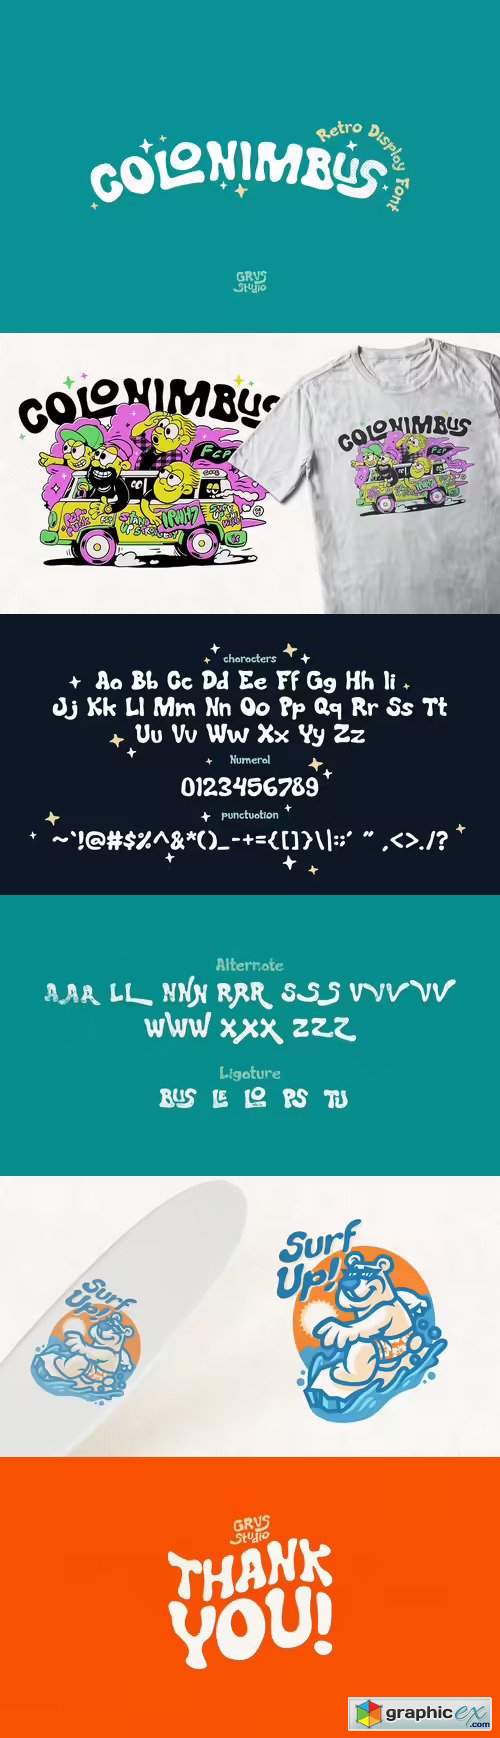 Colonimbus Retro Display Font